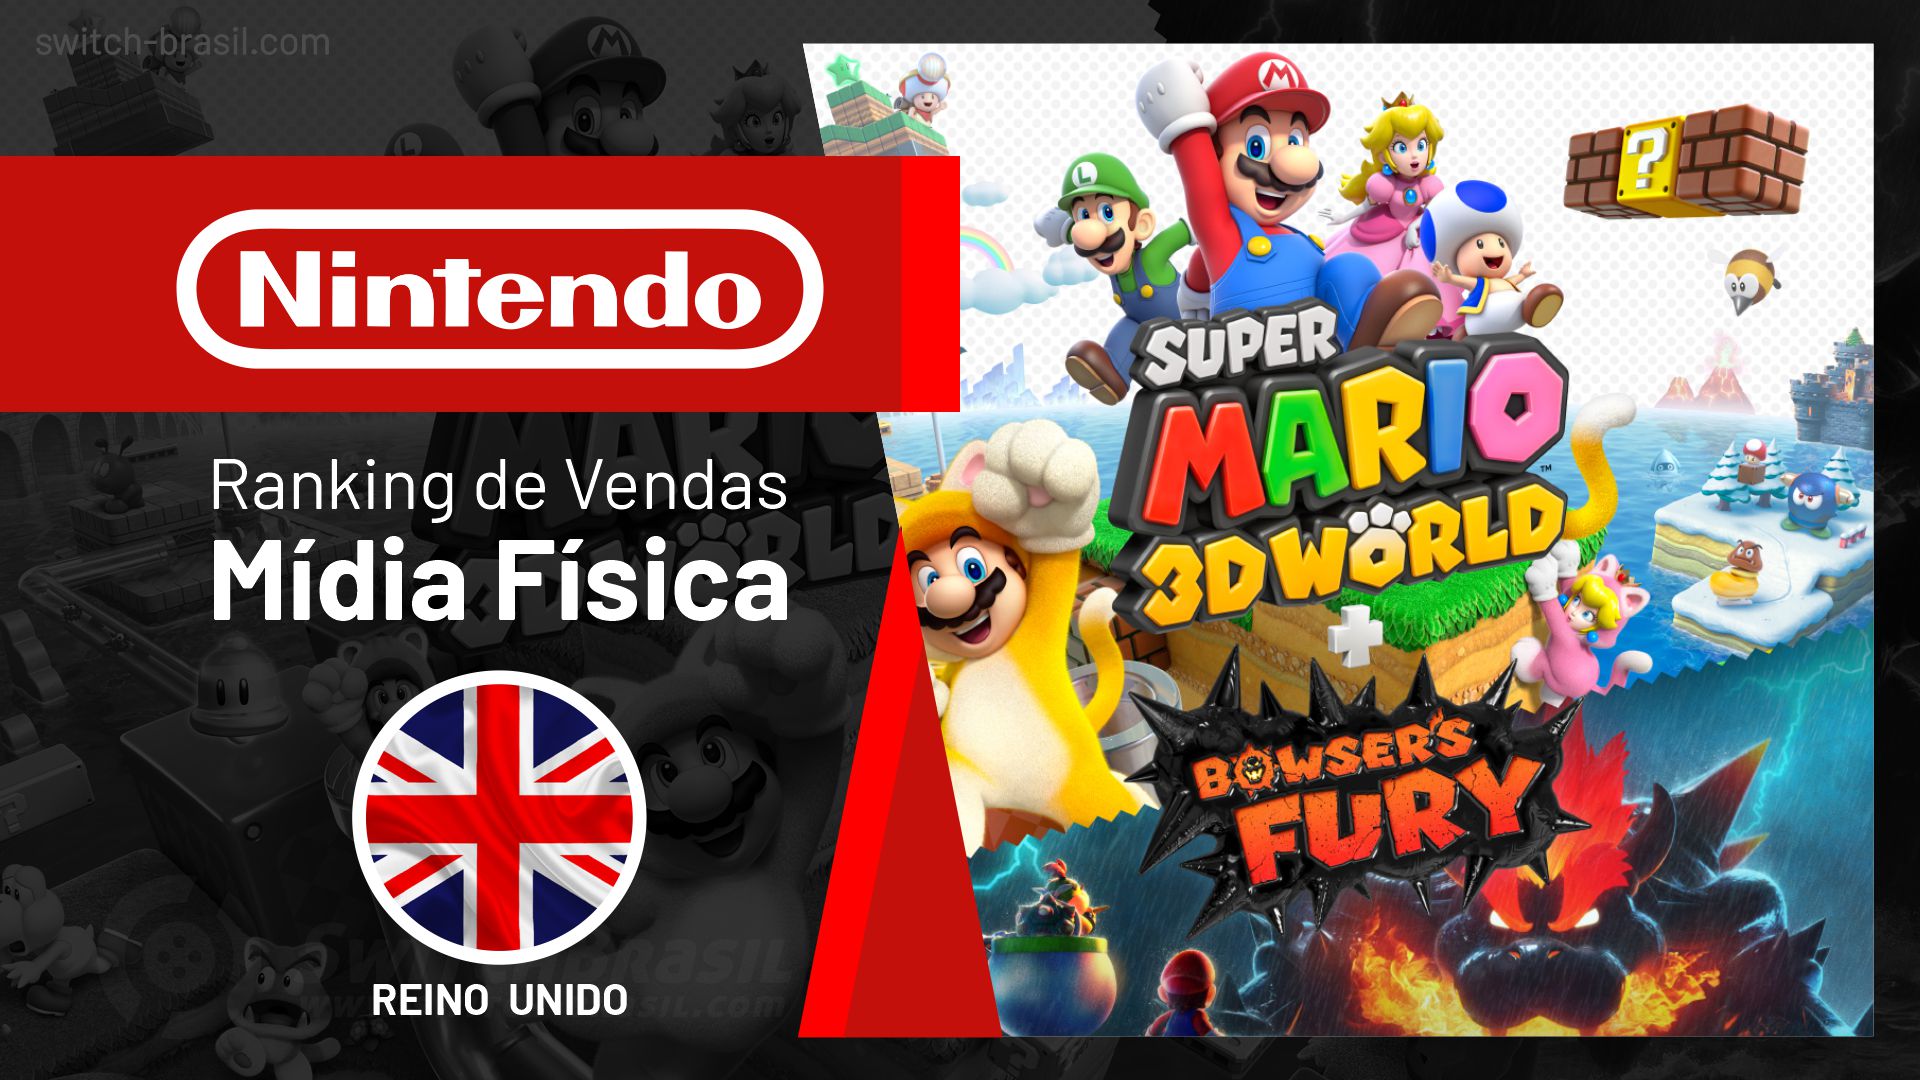 Super Mario Maker 2 é o maior lançamento da Nintendo em 2019, no Reino  Unido